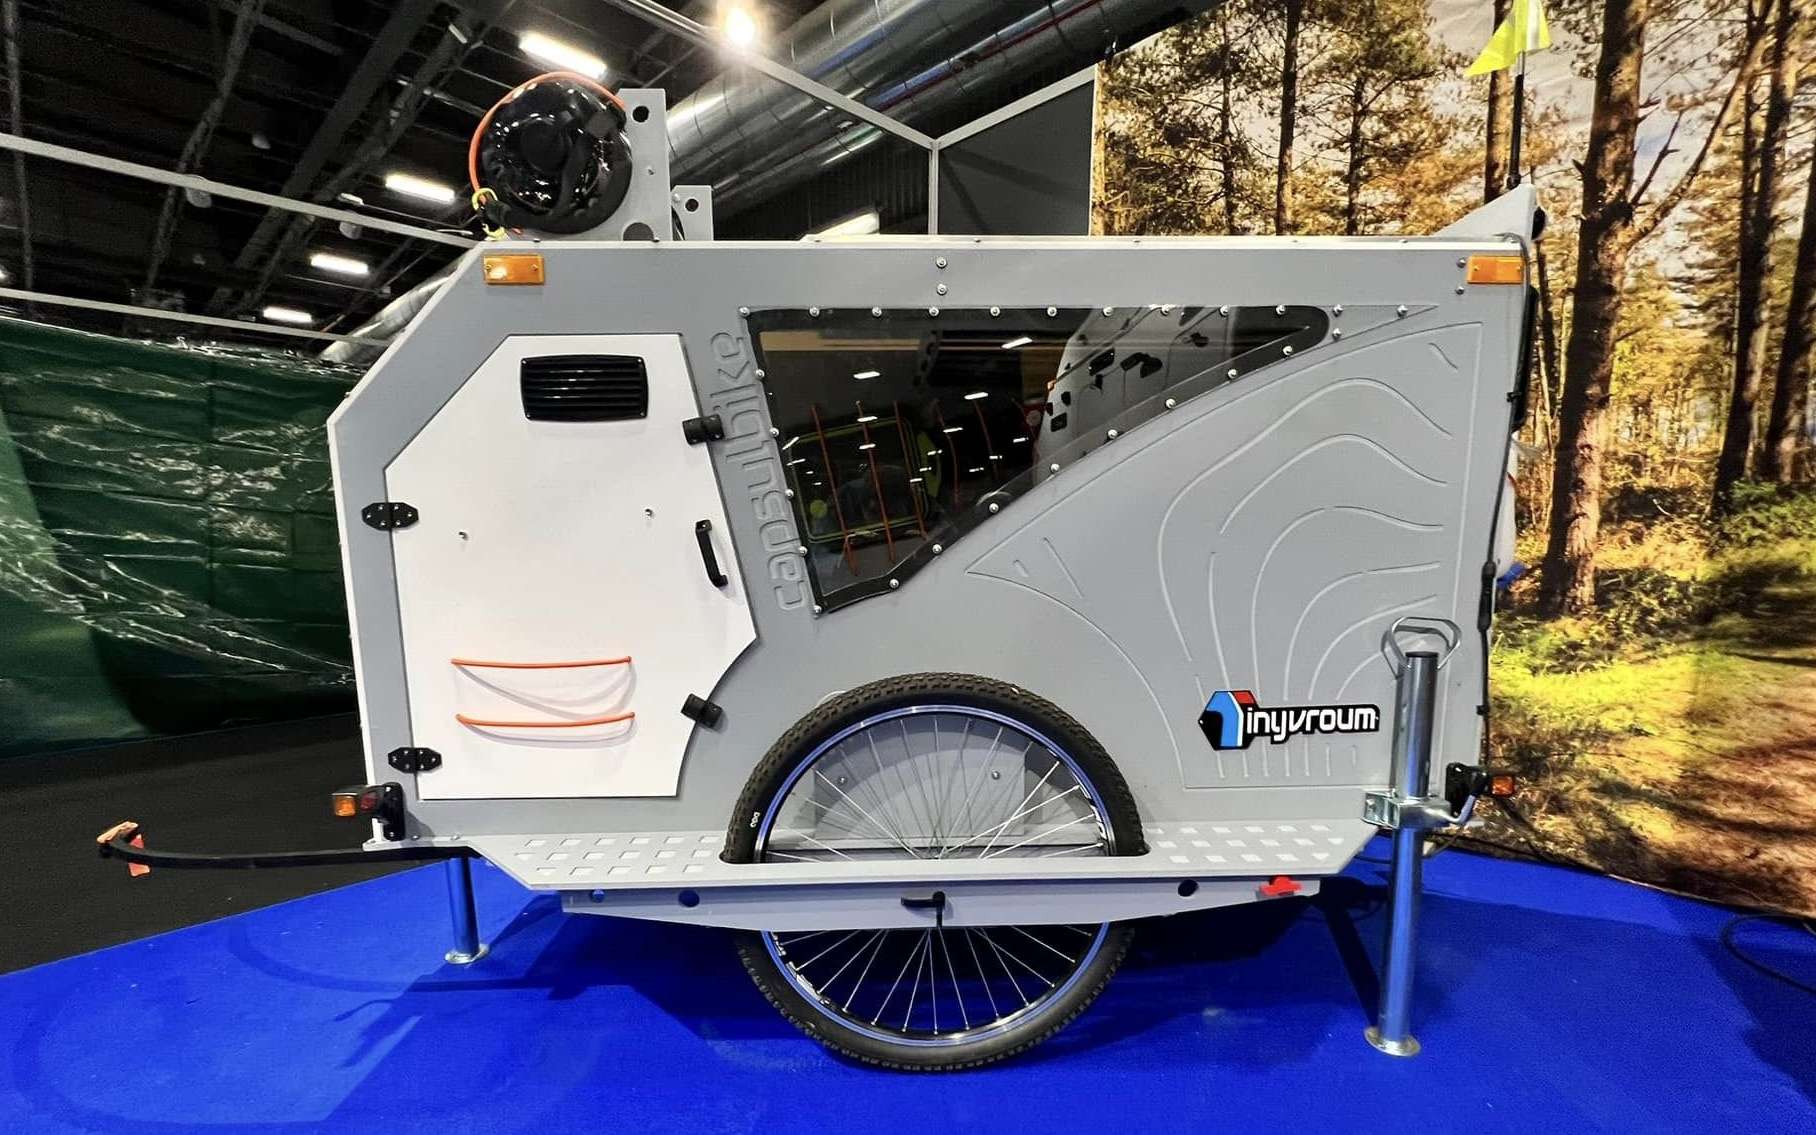 Une mini-caravane pour vélo géniale et toute équipée !